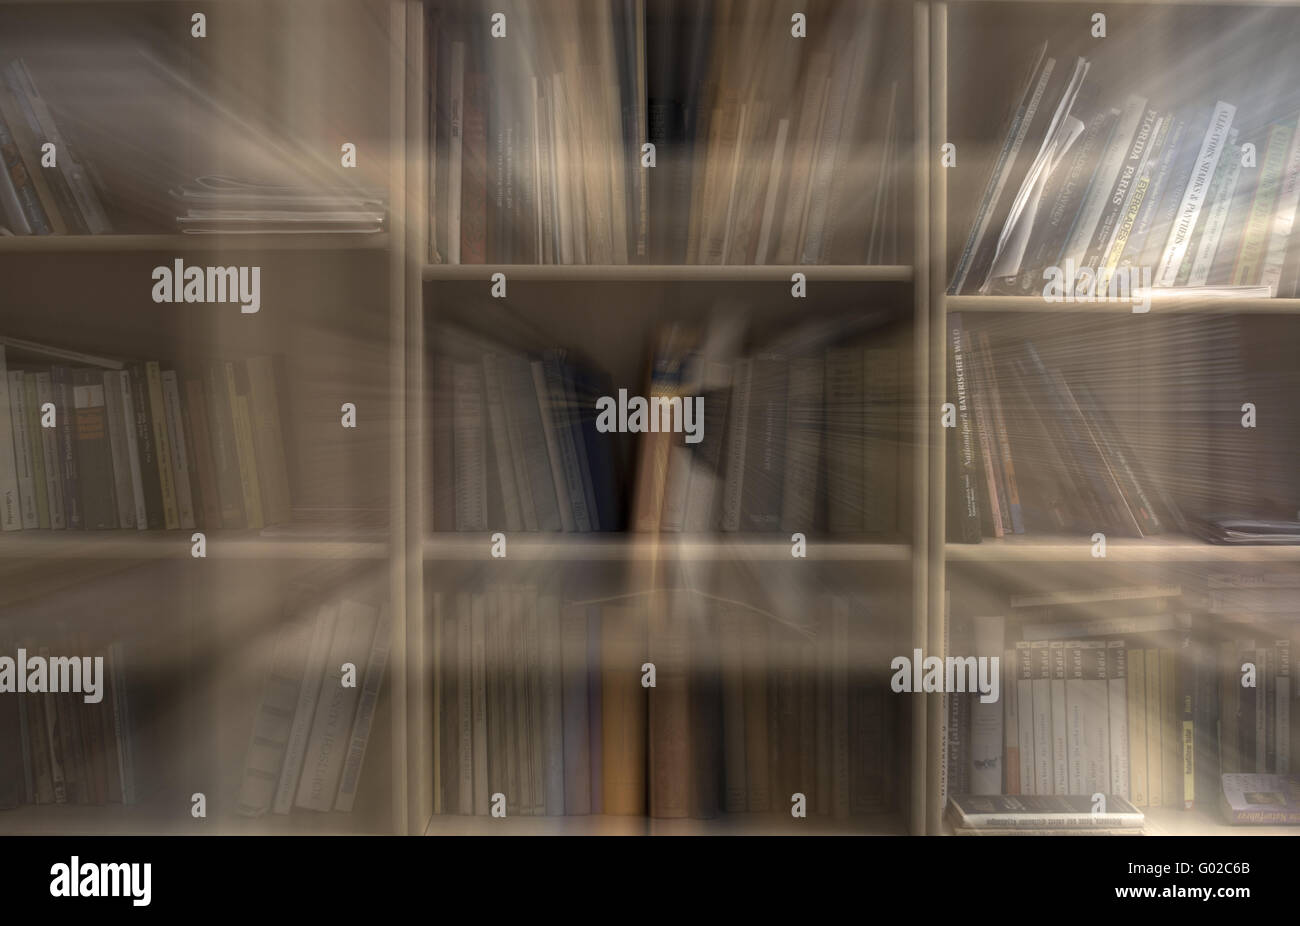 Bibliothekar Traum Stockfoto